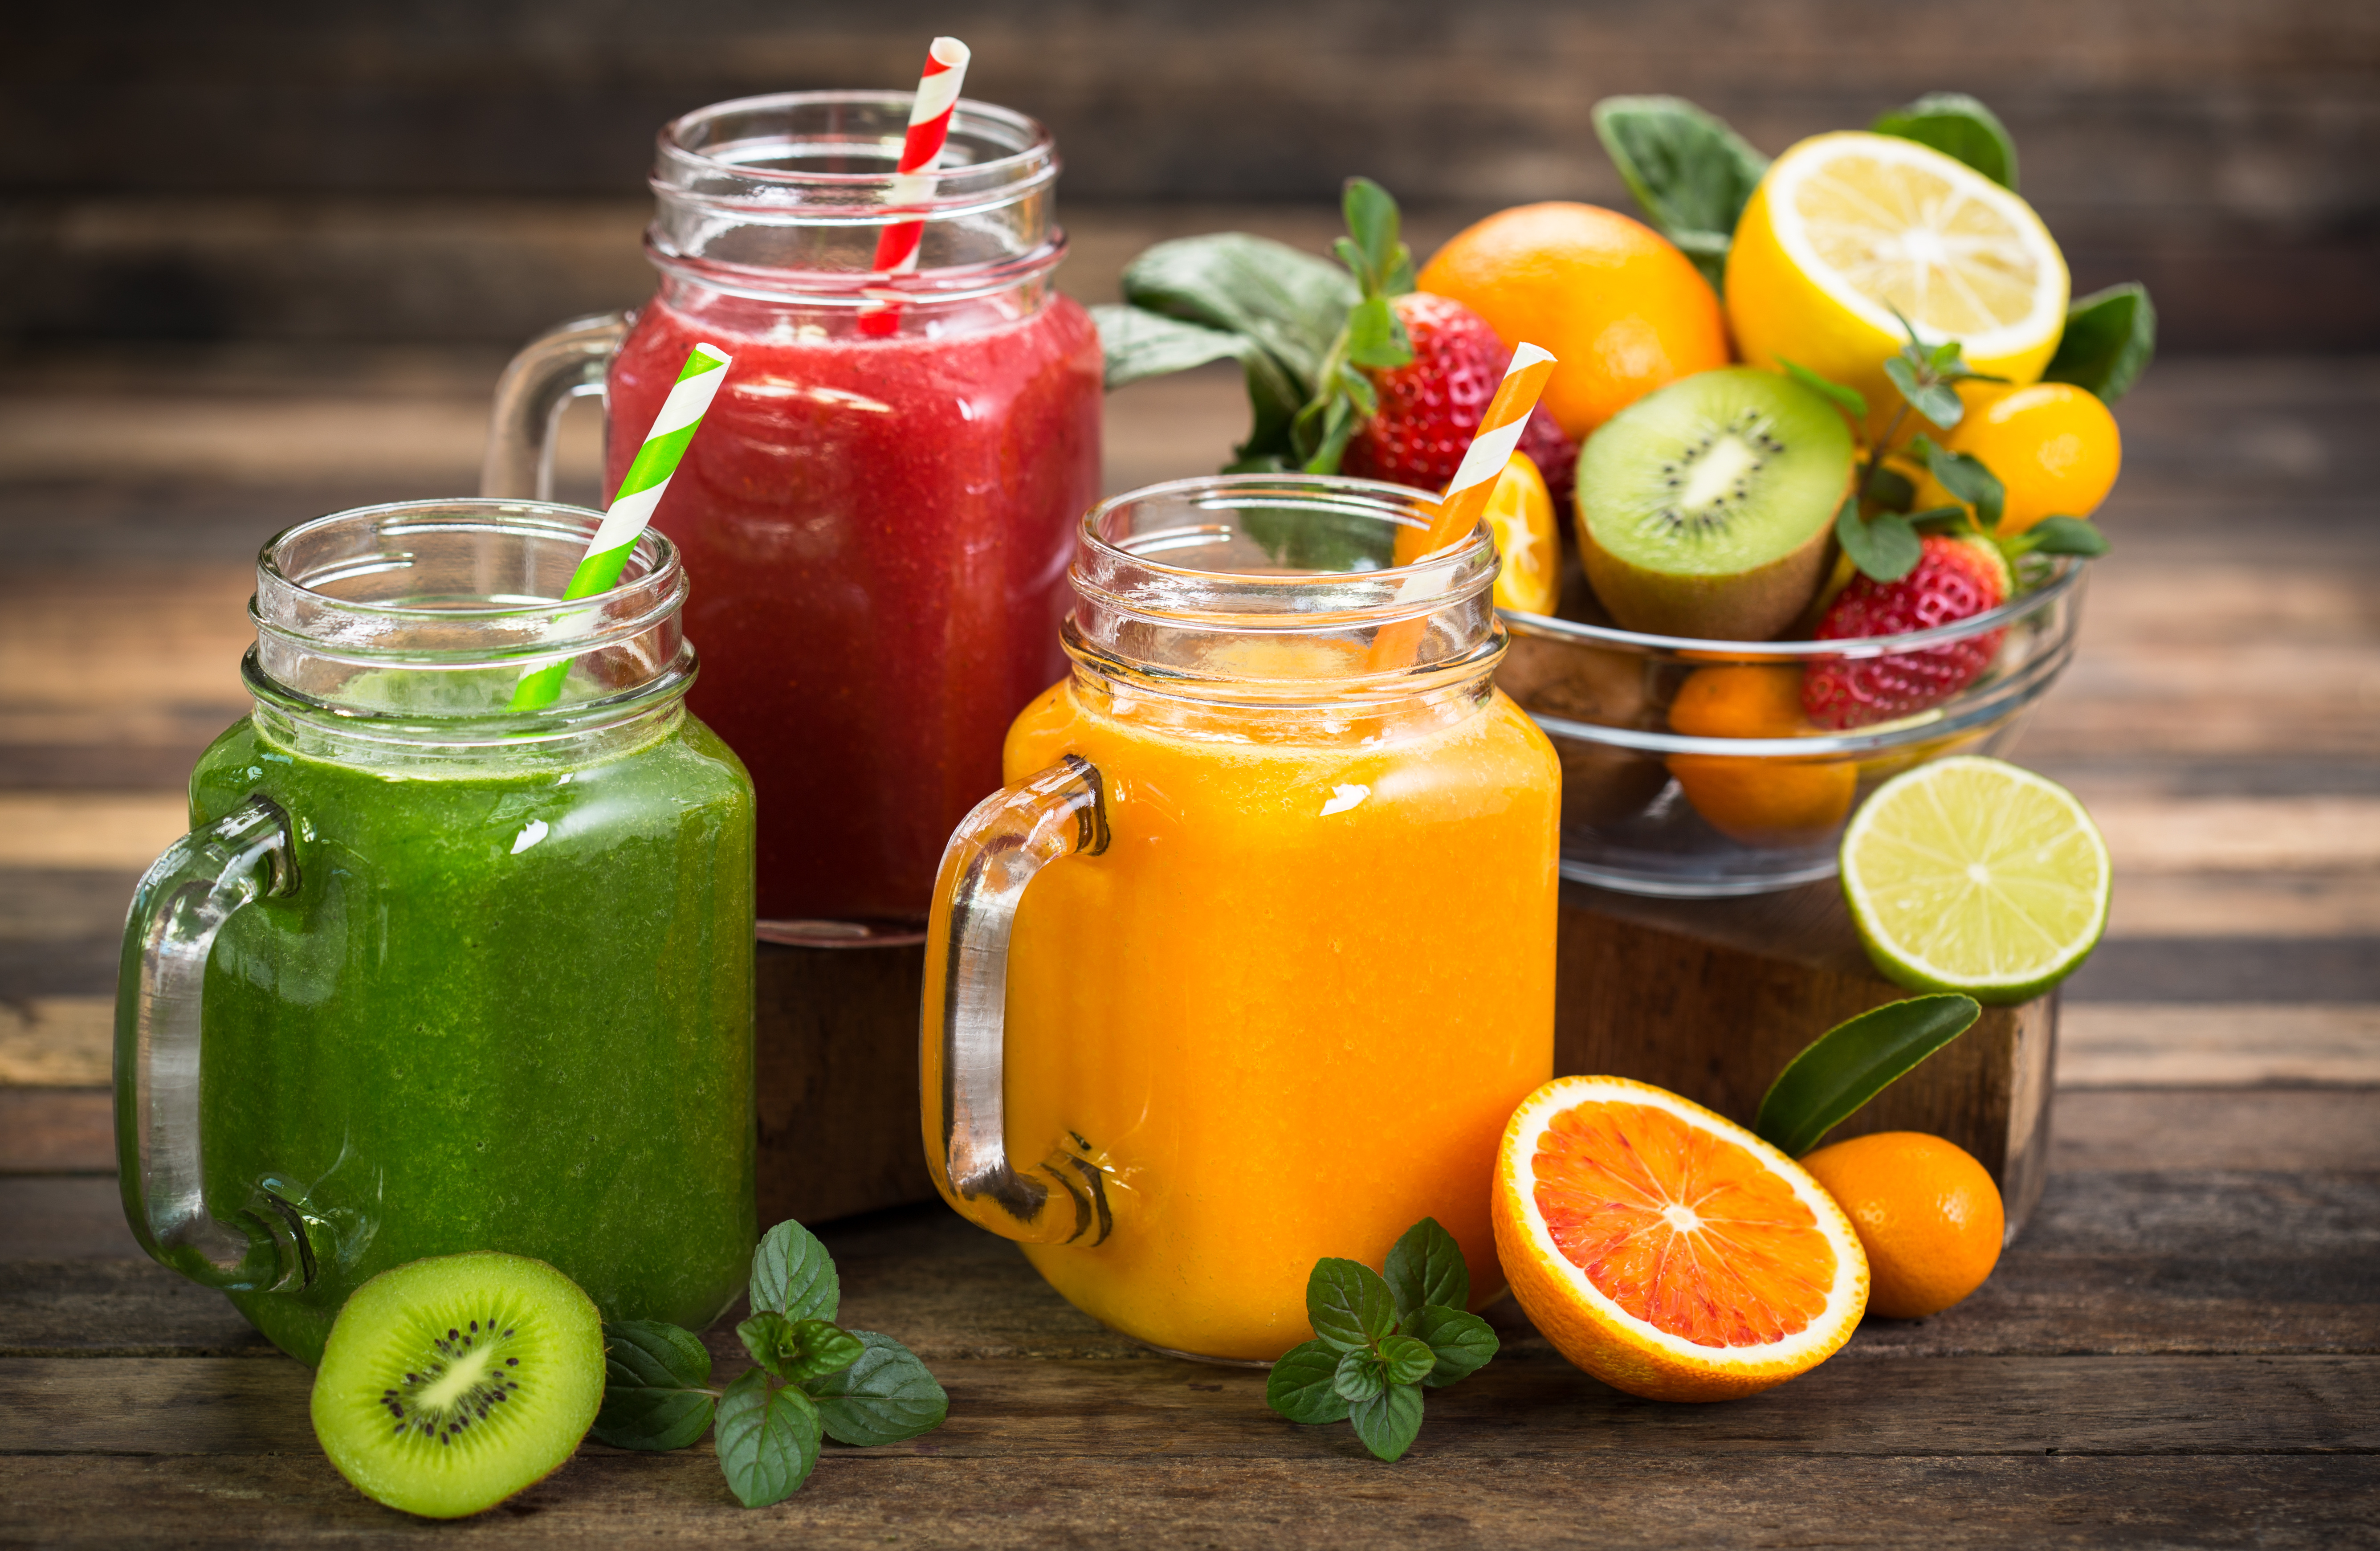 verre de jus de fruits colorés sources de vitamines et minéraux